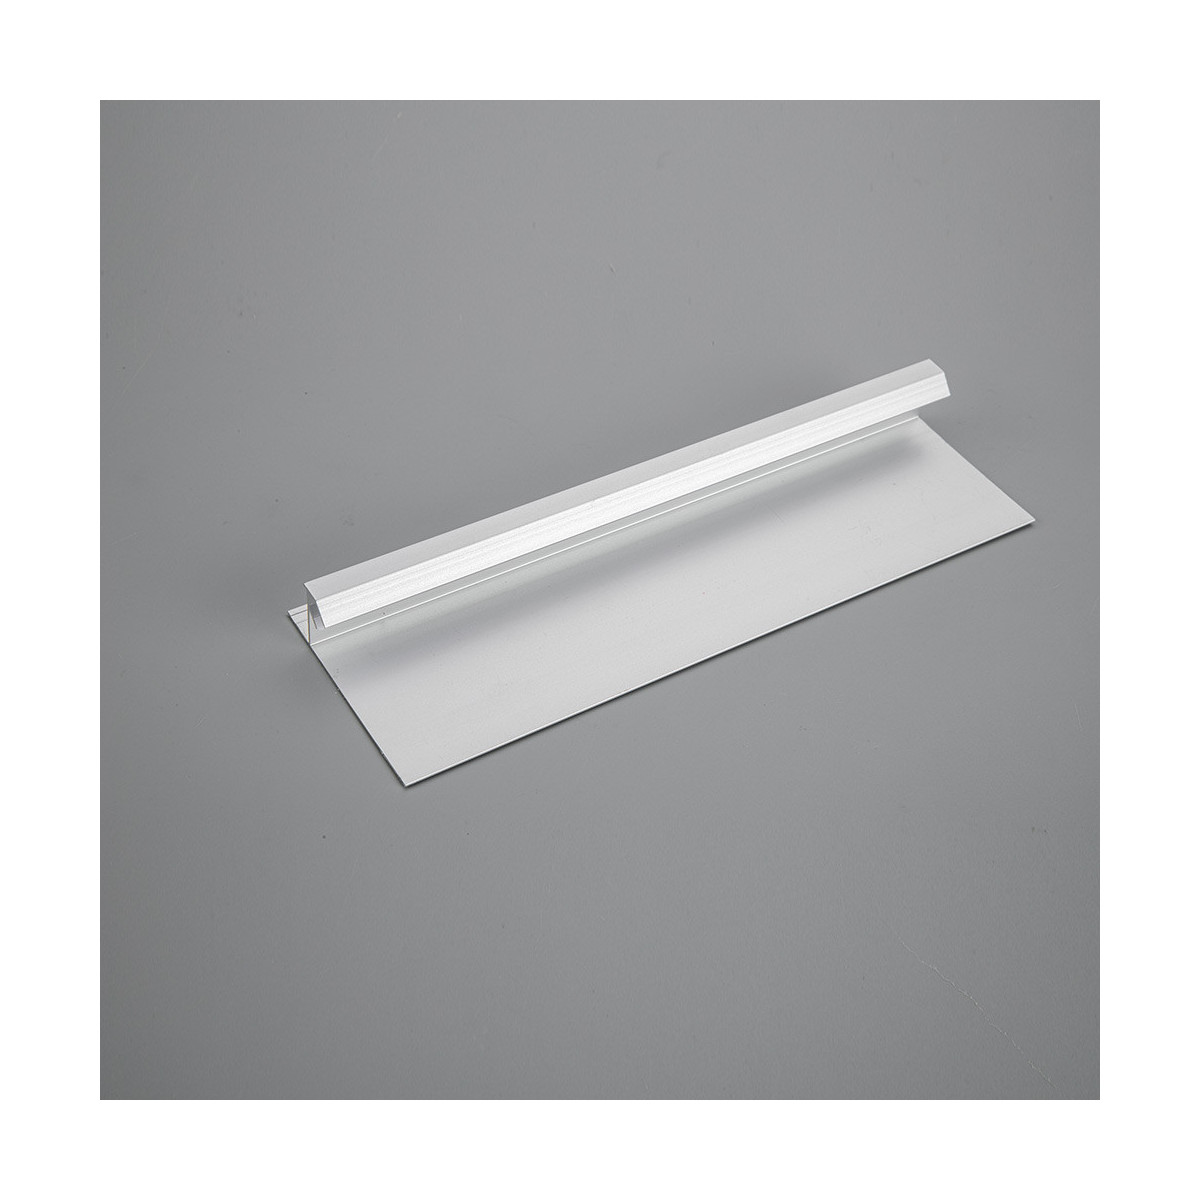 Aluminiumprofil led streifen weiß 2m für steckdose - indirektes licht